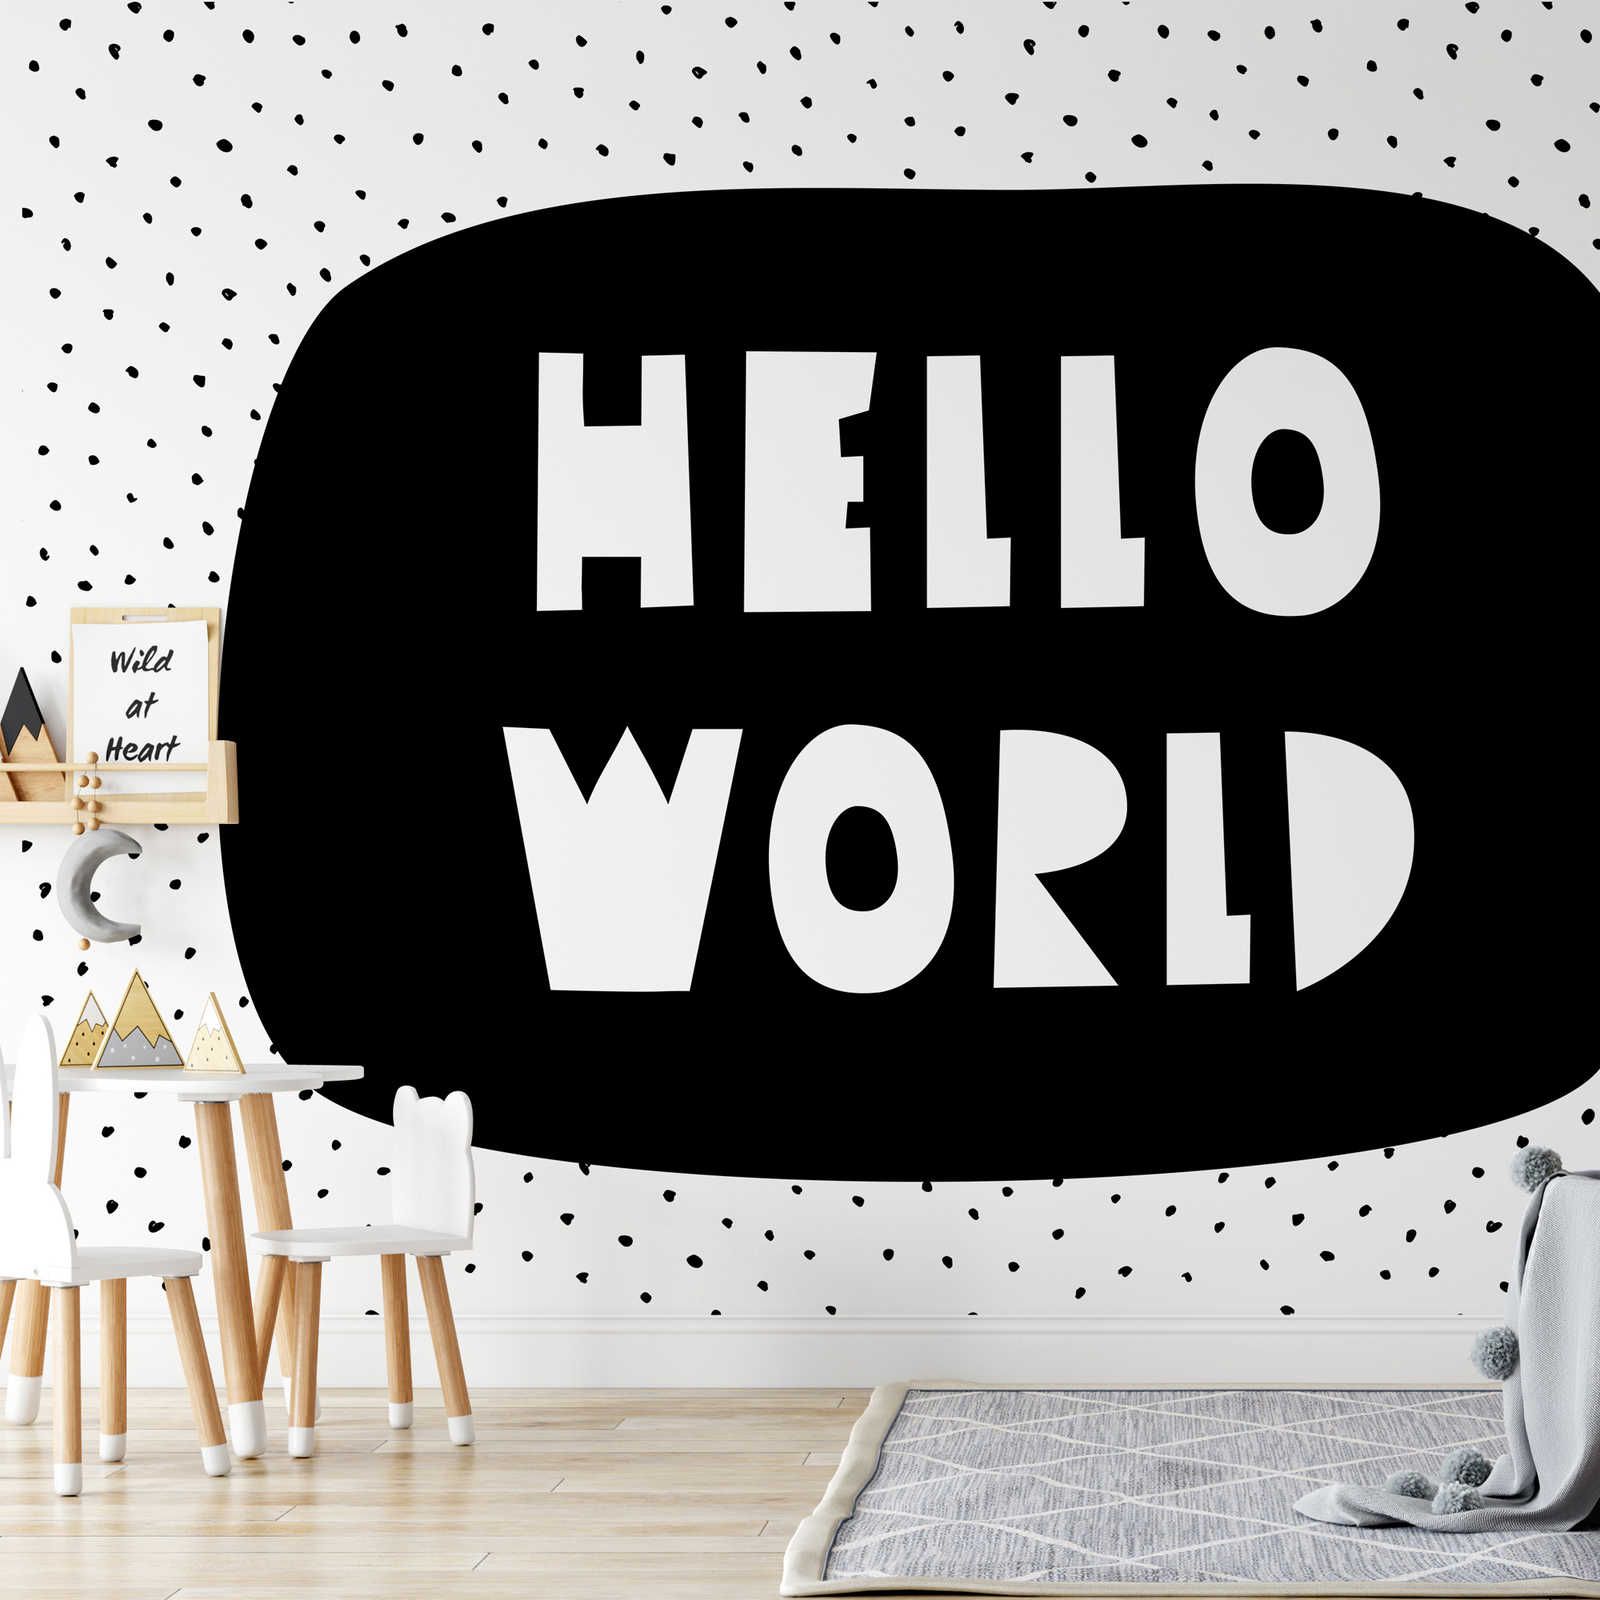 Fotomurali per la camera dei bambini con la scritta "Hello World" - Materiali non tessuto liscio e leggermente lucido
